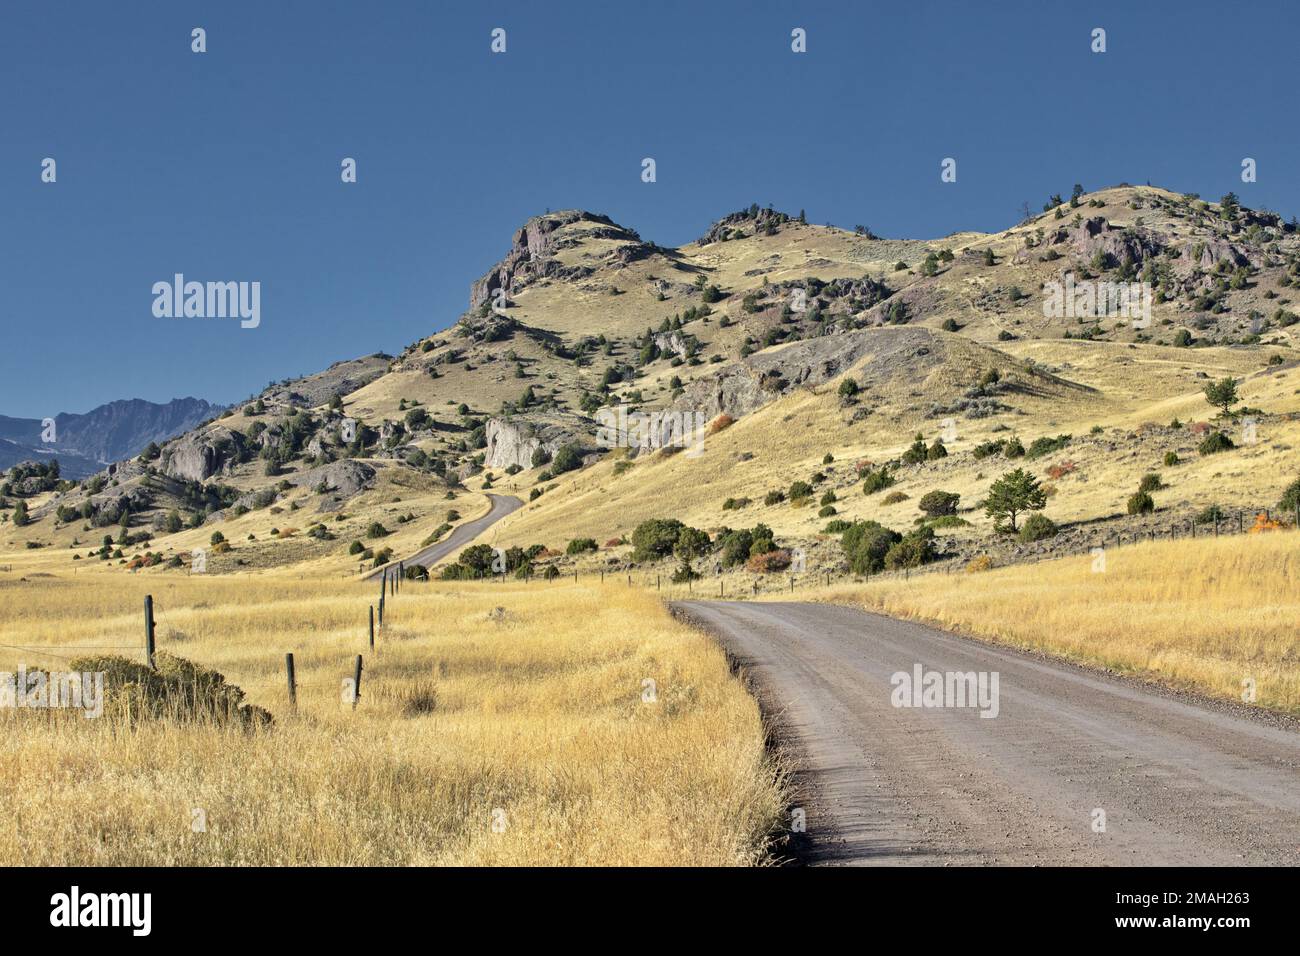 L'Ouest américain se présente avec une courbe montante de route de campagne, symbole de la Wanderlust décontractée accentuée par les collines du Montana, États-Unis Banque D'Images